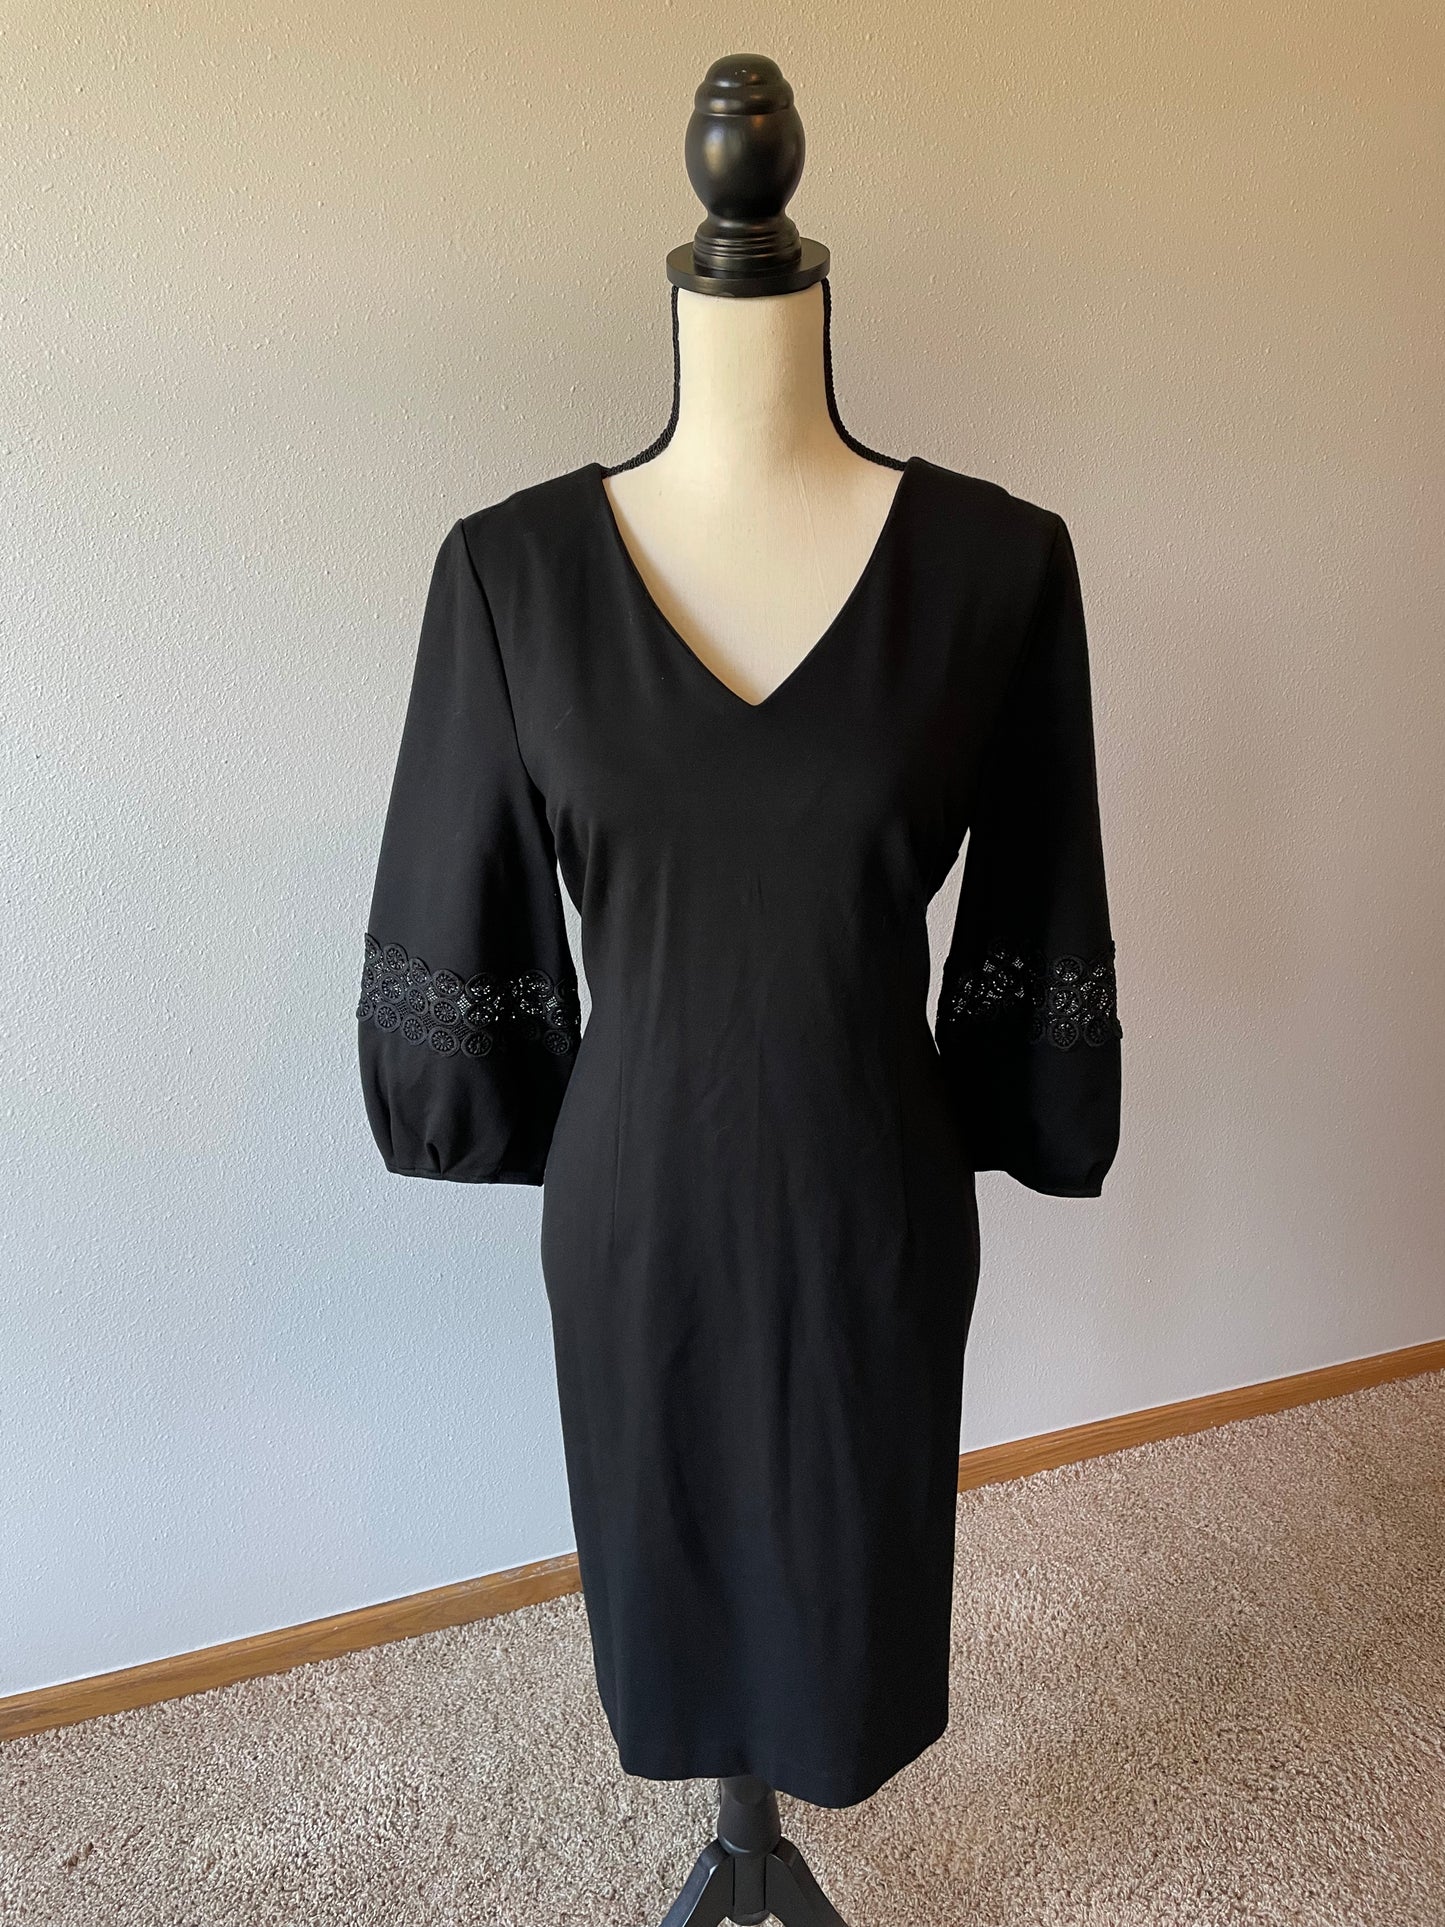 Talbots Black Dress (8)